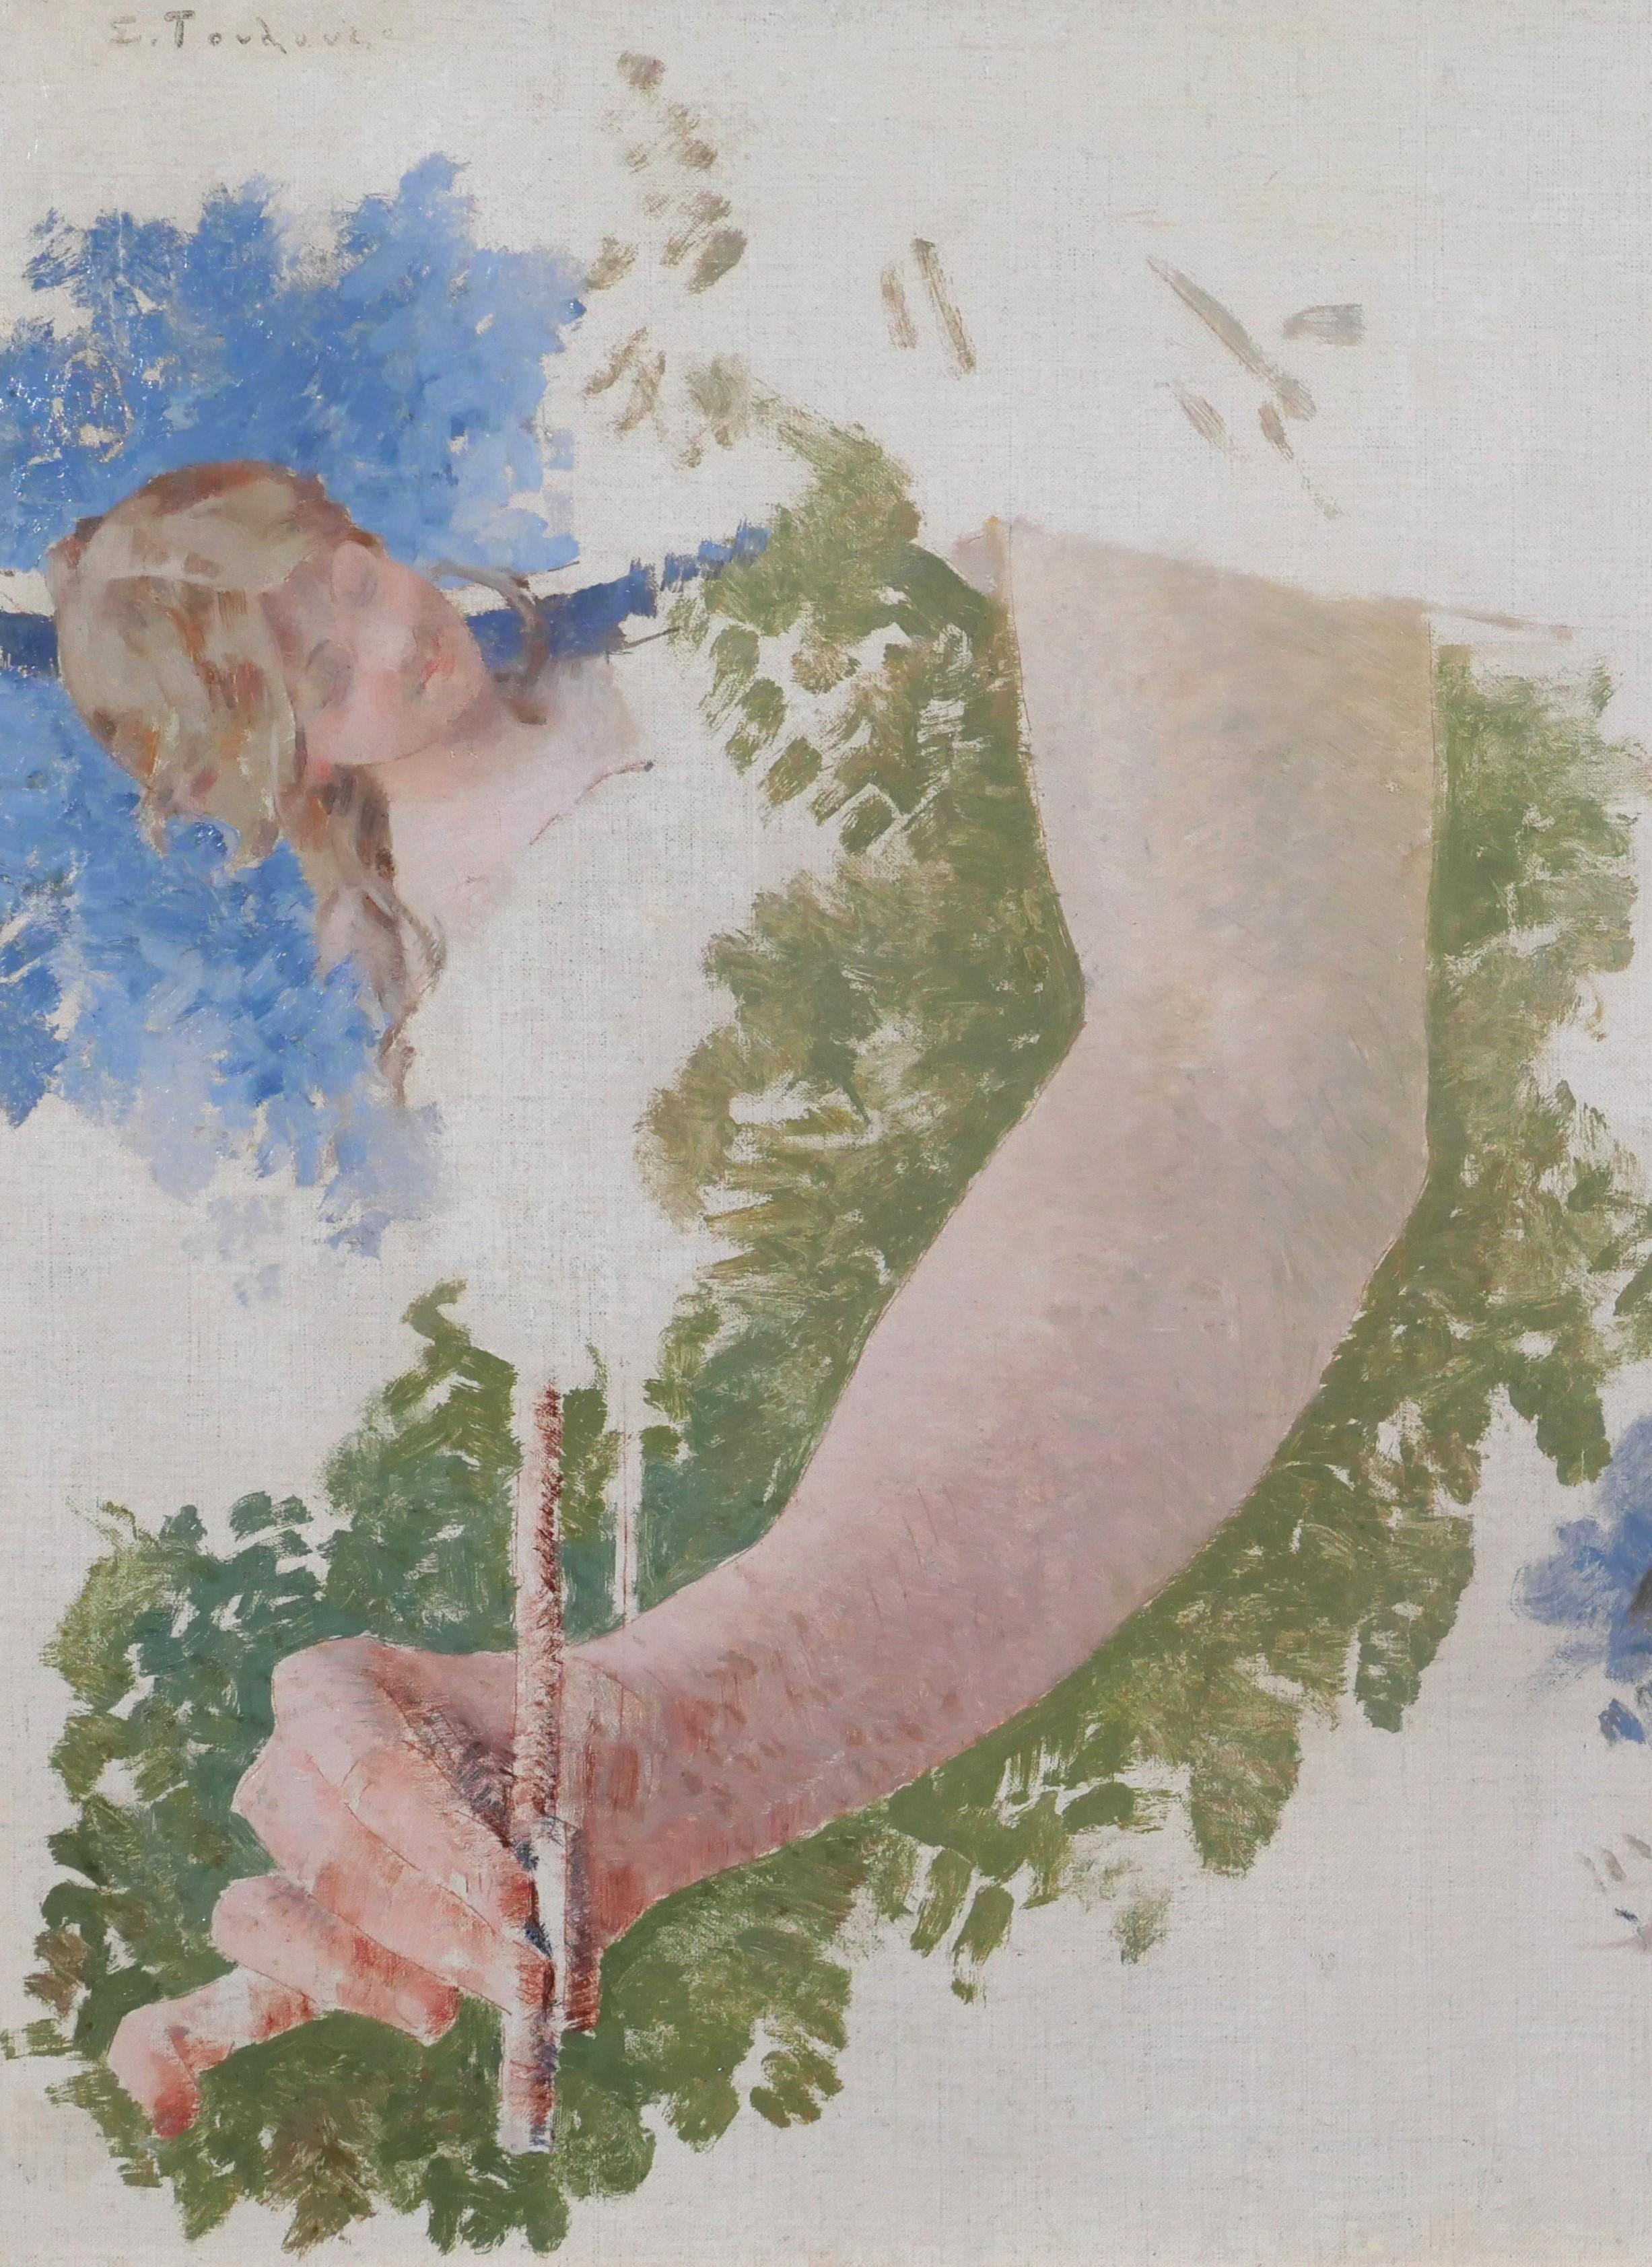 Études de trois têtes et un bras pour l' allégorie de la musique, Paris, opéra - Art nouveau Painting par Edouard Toudouze